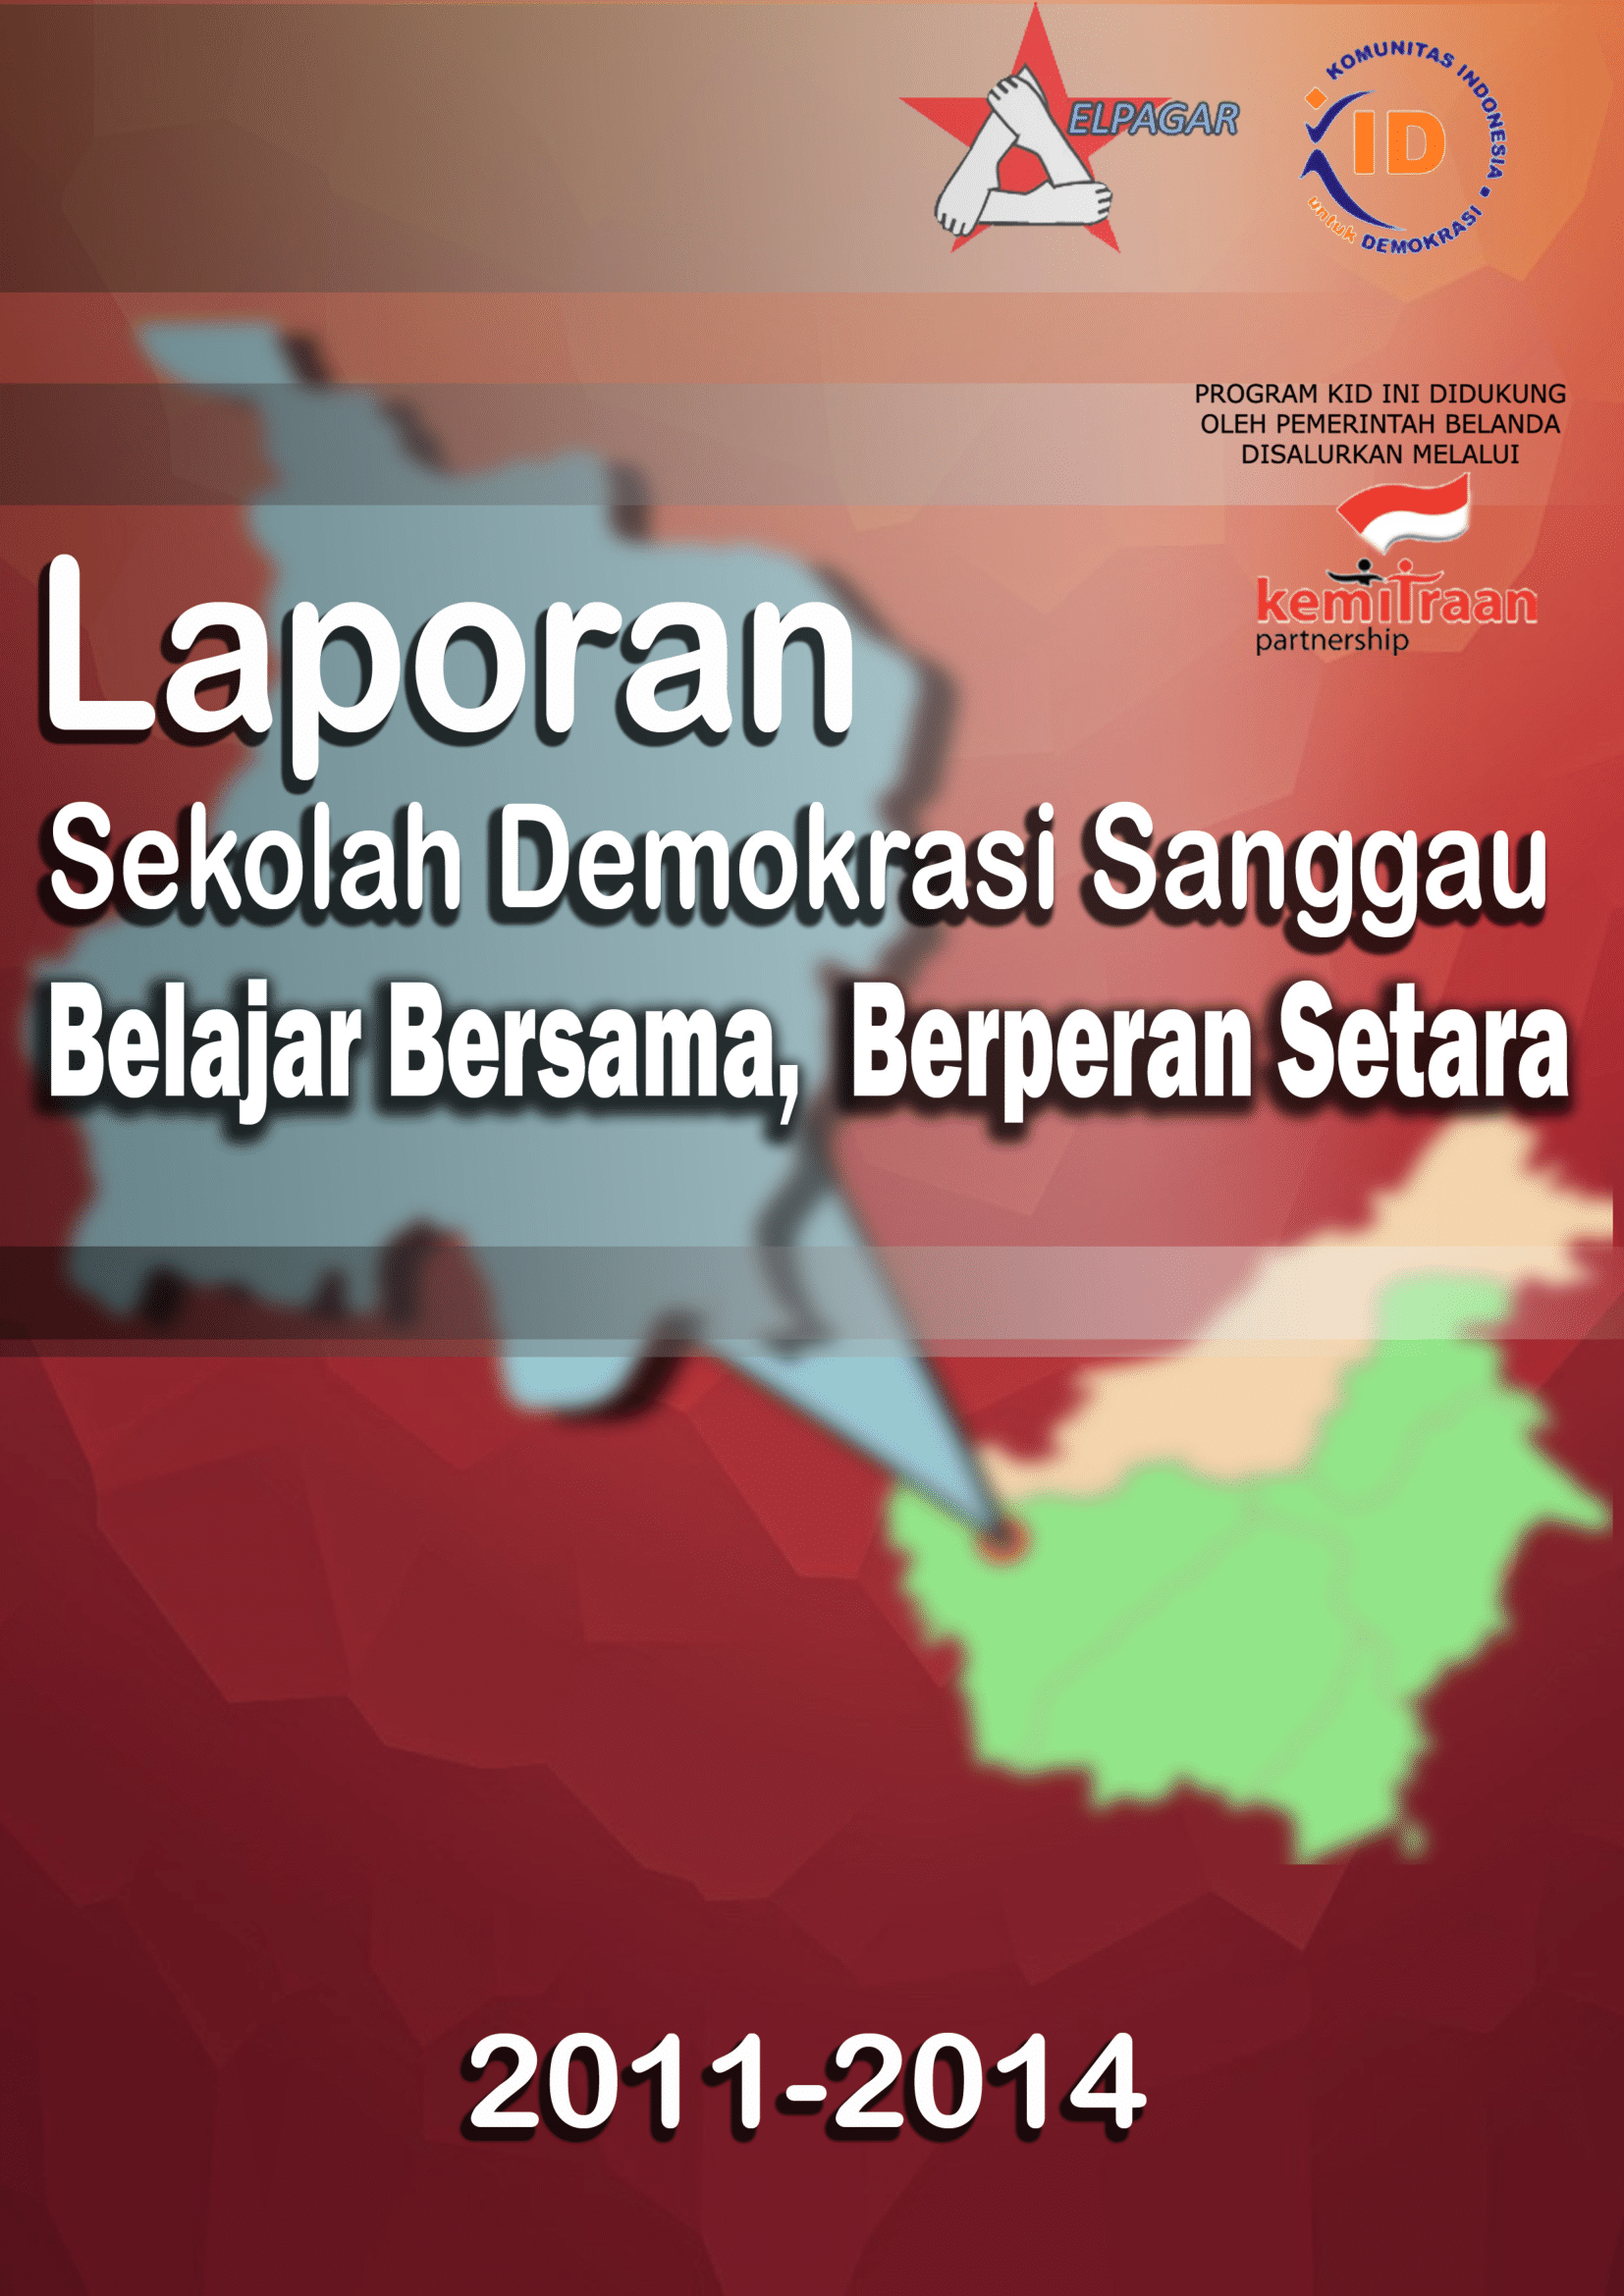 Buku Laporan Sekolah Demokrasi Sanggau 2011-2014 (Belajar Bersama, Berperan Setara)